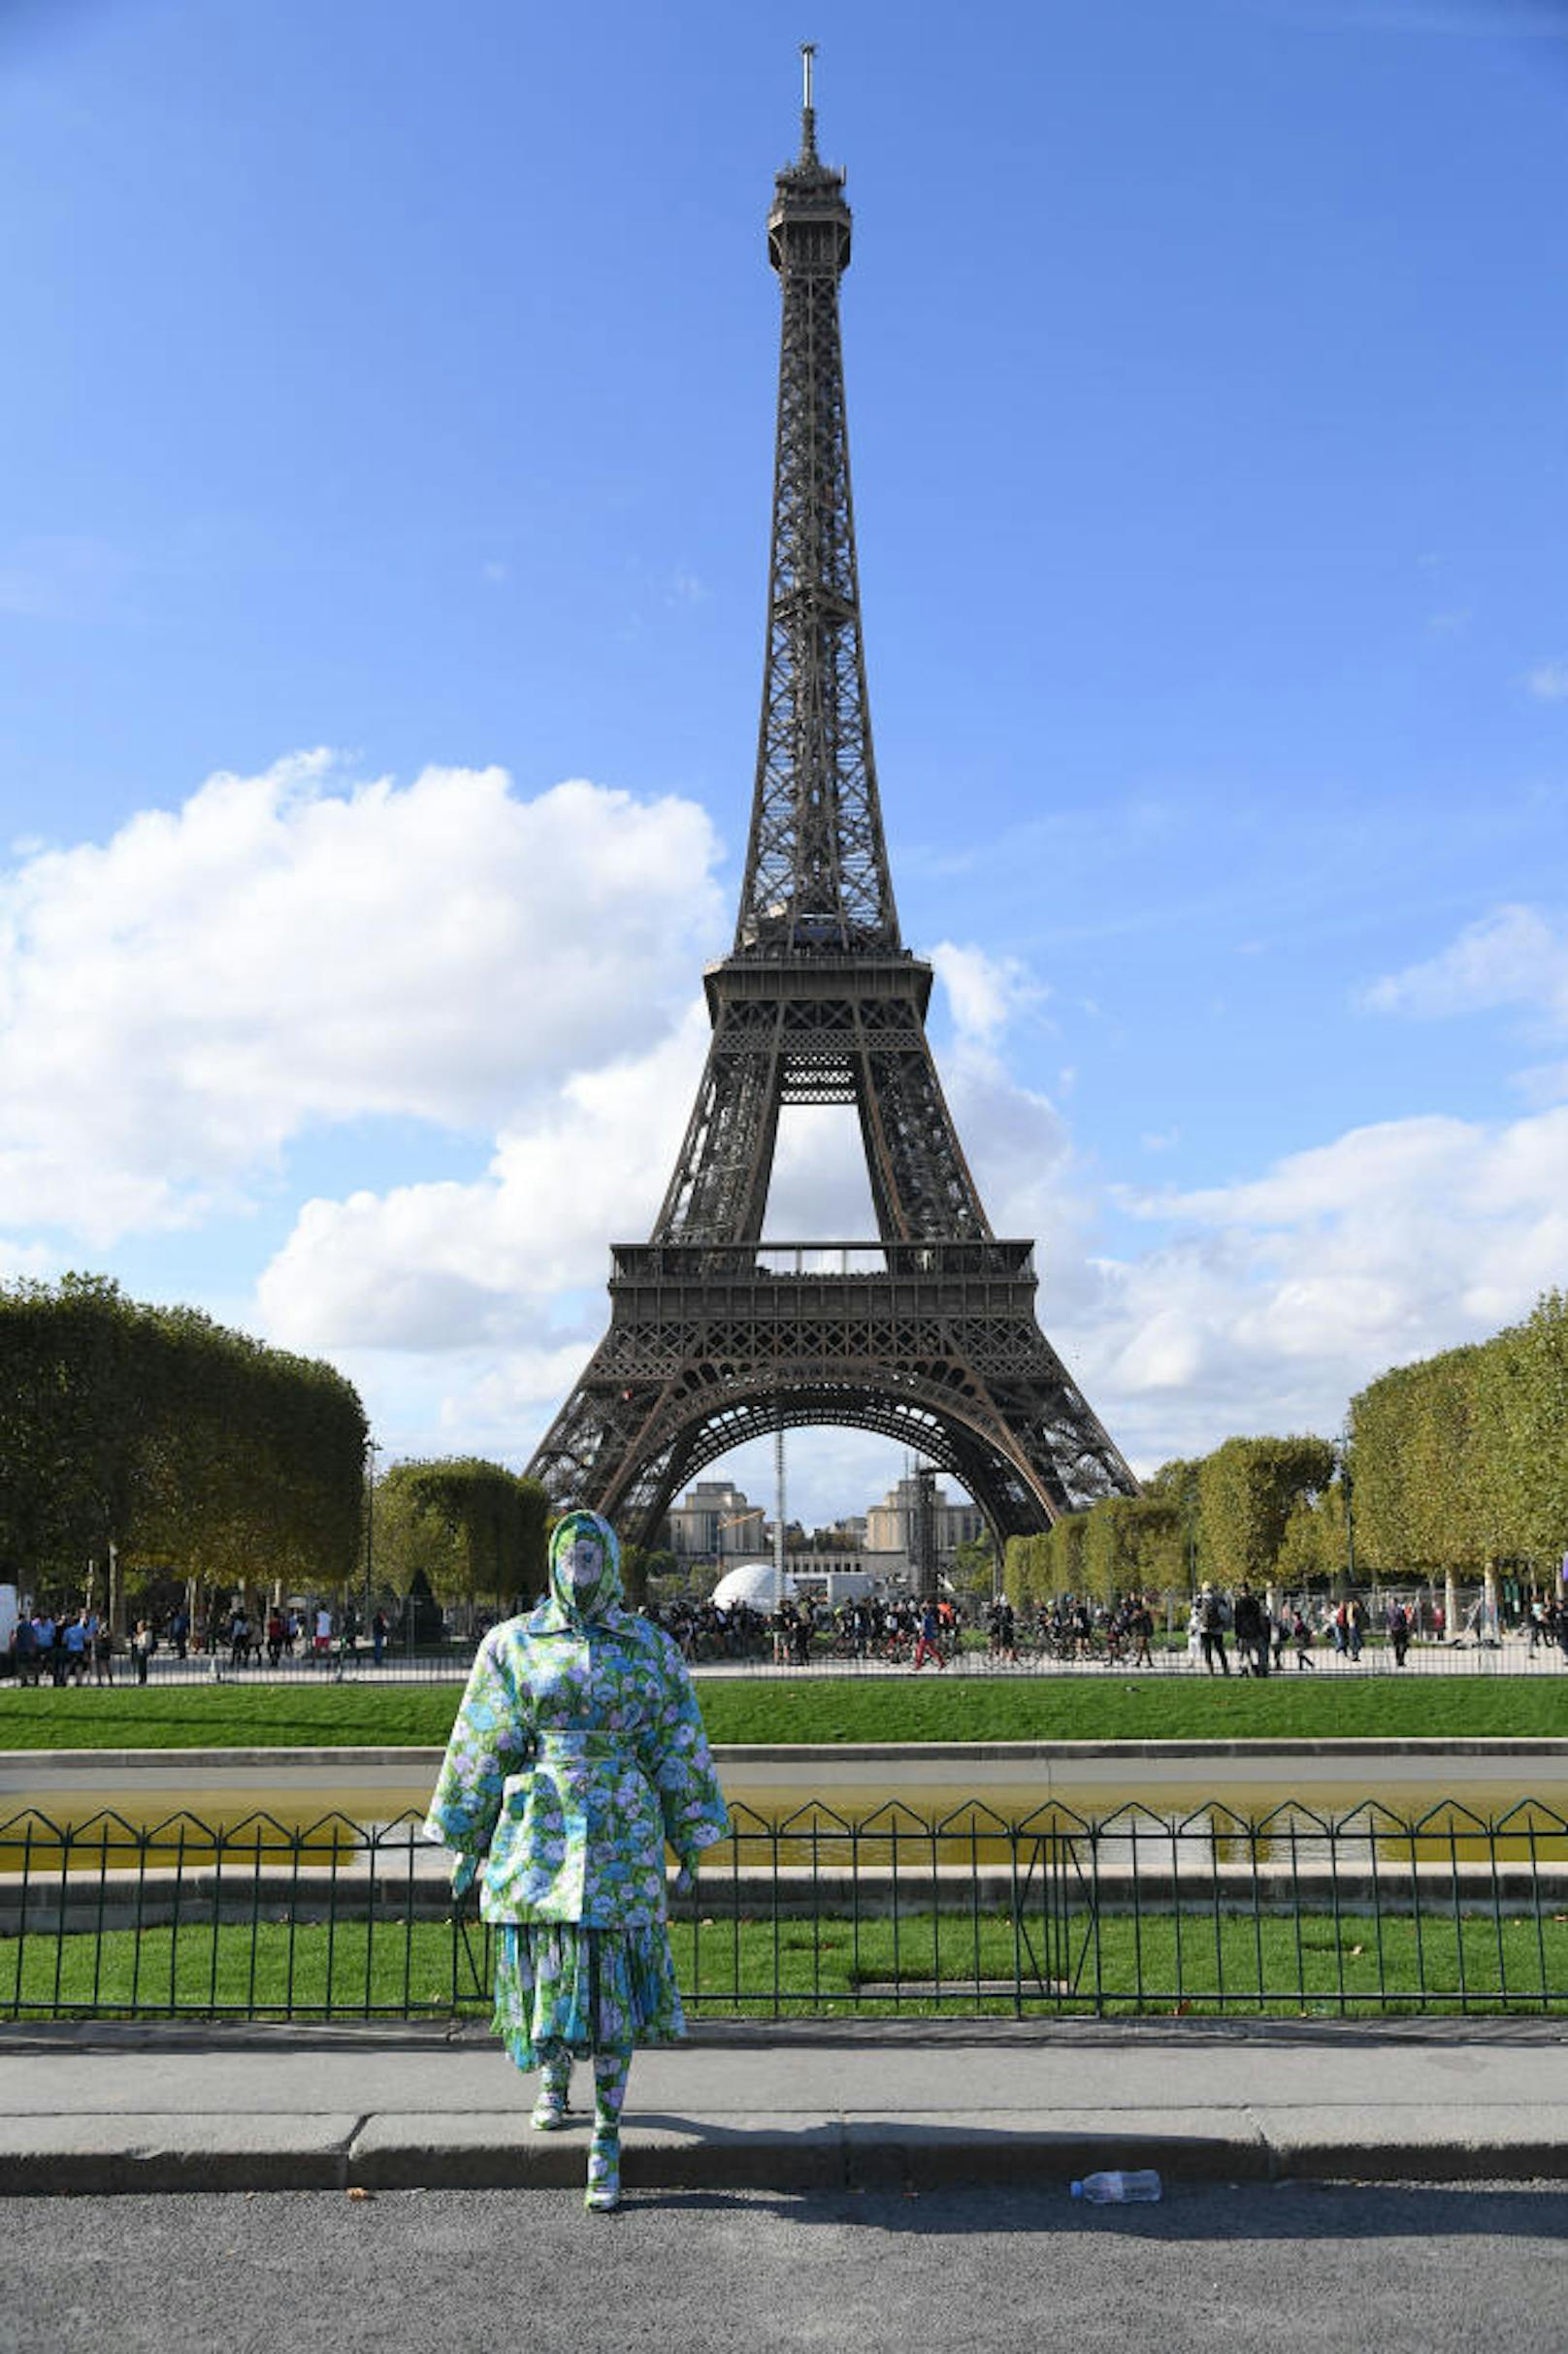 ... posierte ein Superstar aus den USA vor dem berühmtesten Wahrzeichen von Paris.